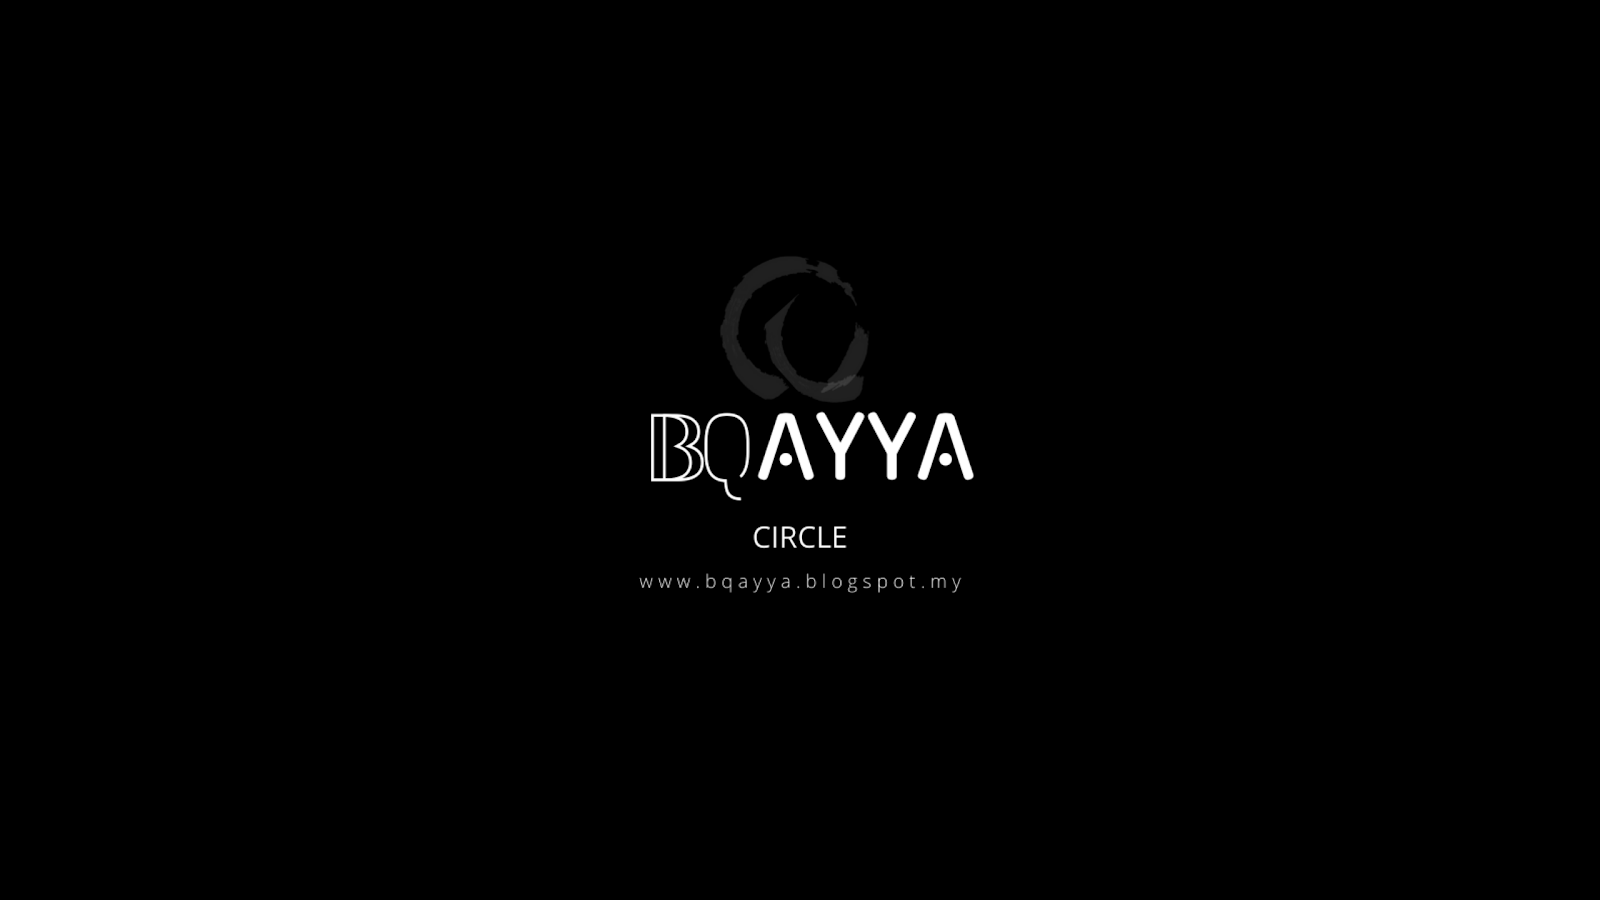 BQayya Circle